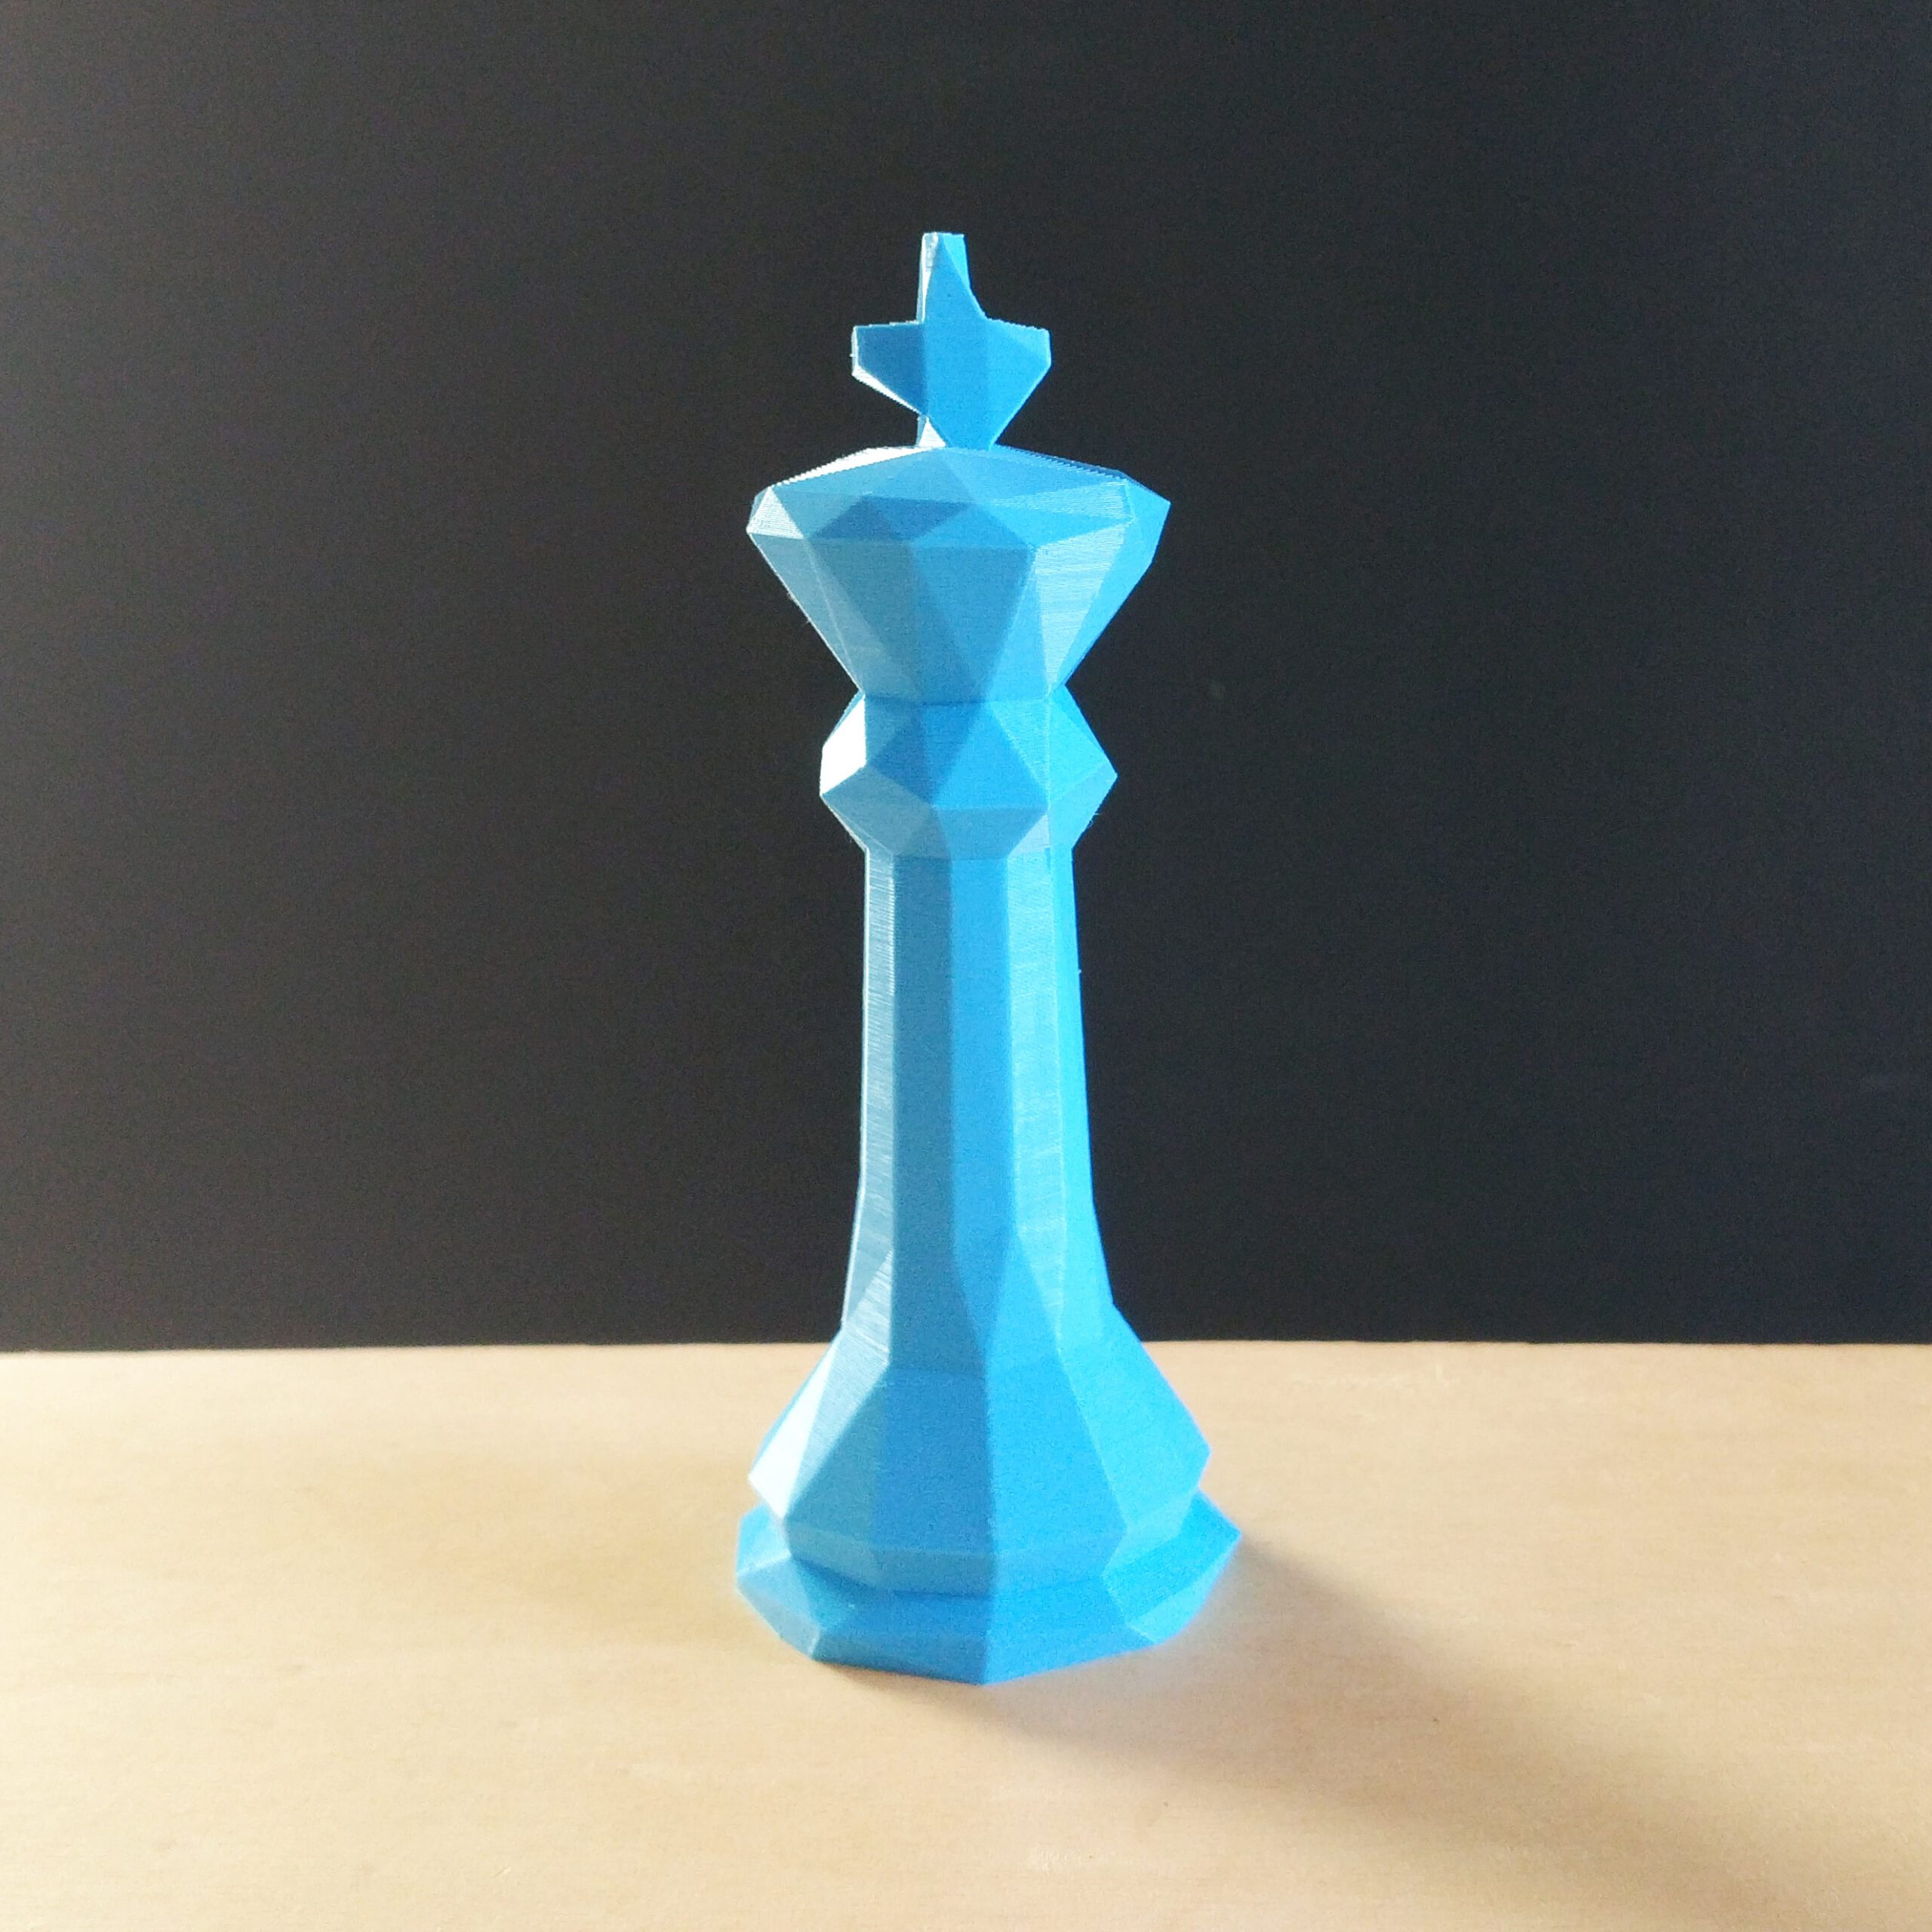 Melhores modelos 3D de xadrez em 2022 